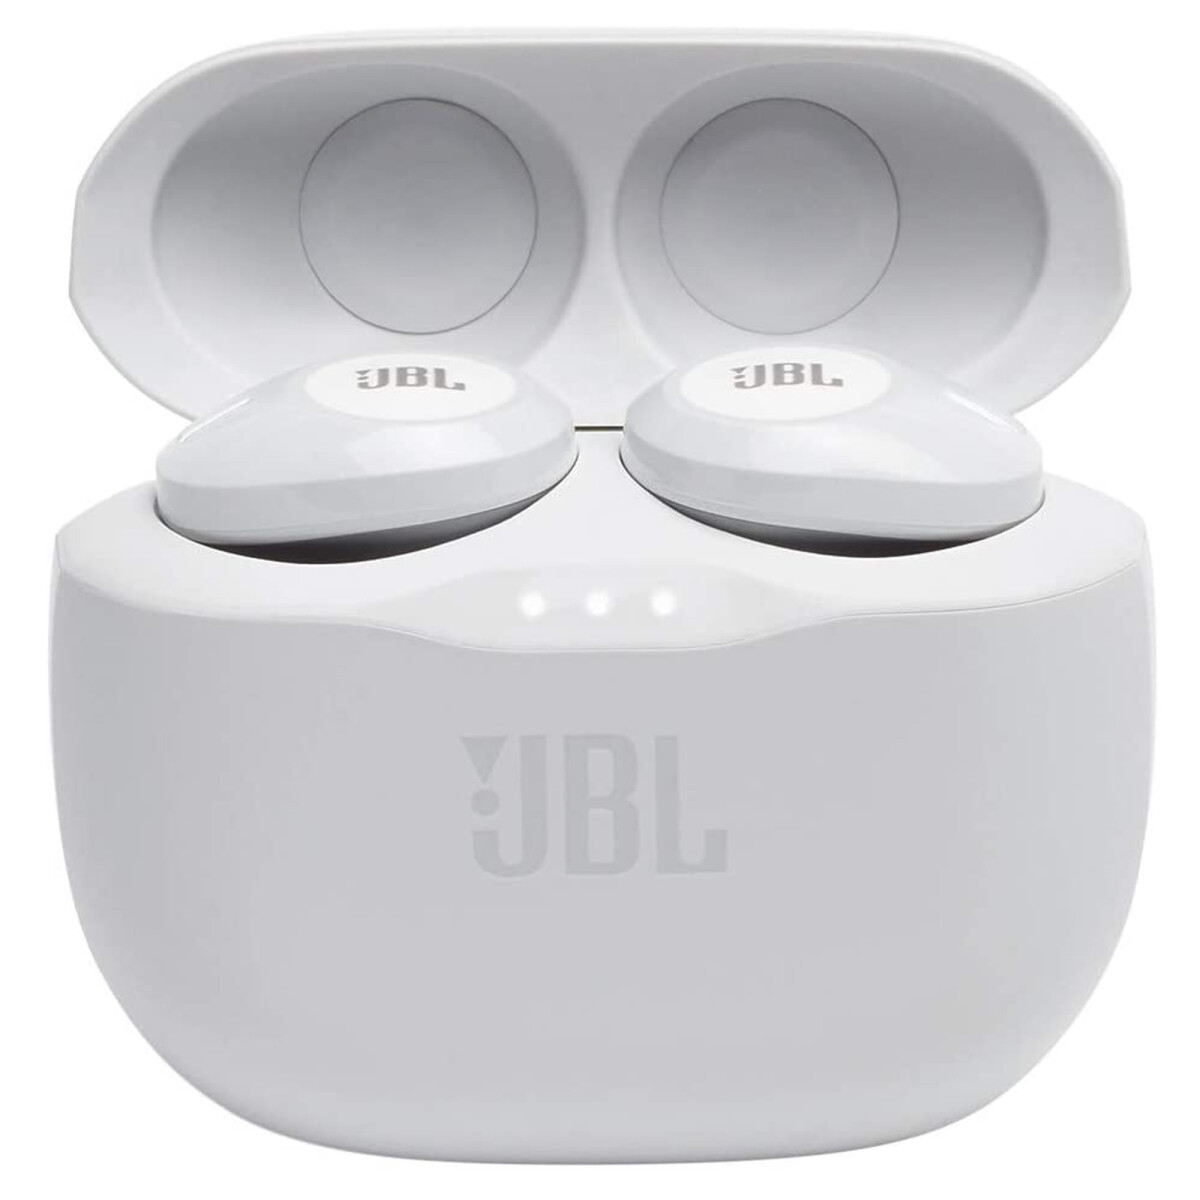 Jbl - Auriculares Inalámbricos Tws. Conectividad Bluetooth. 8 Horas de Uso Continuo. Color Blanco. - 001 